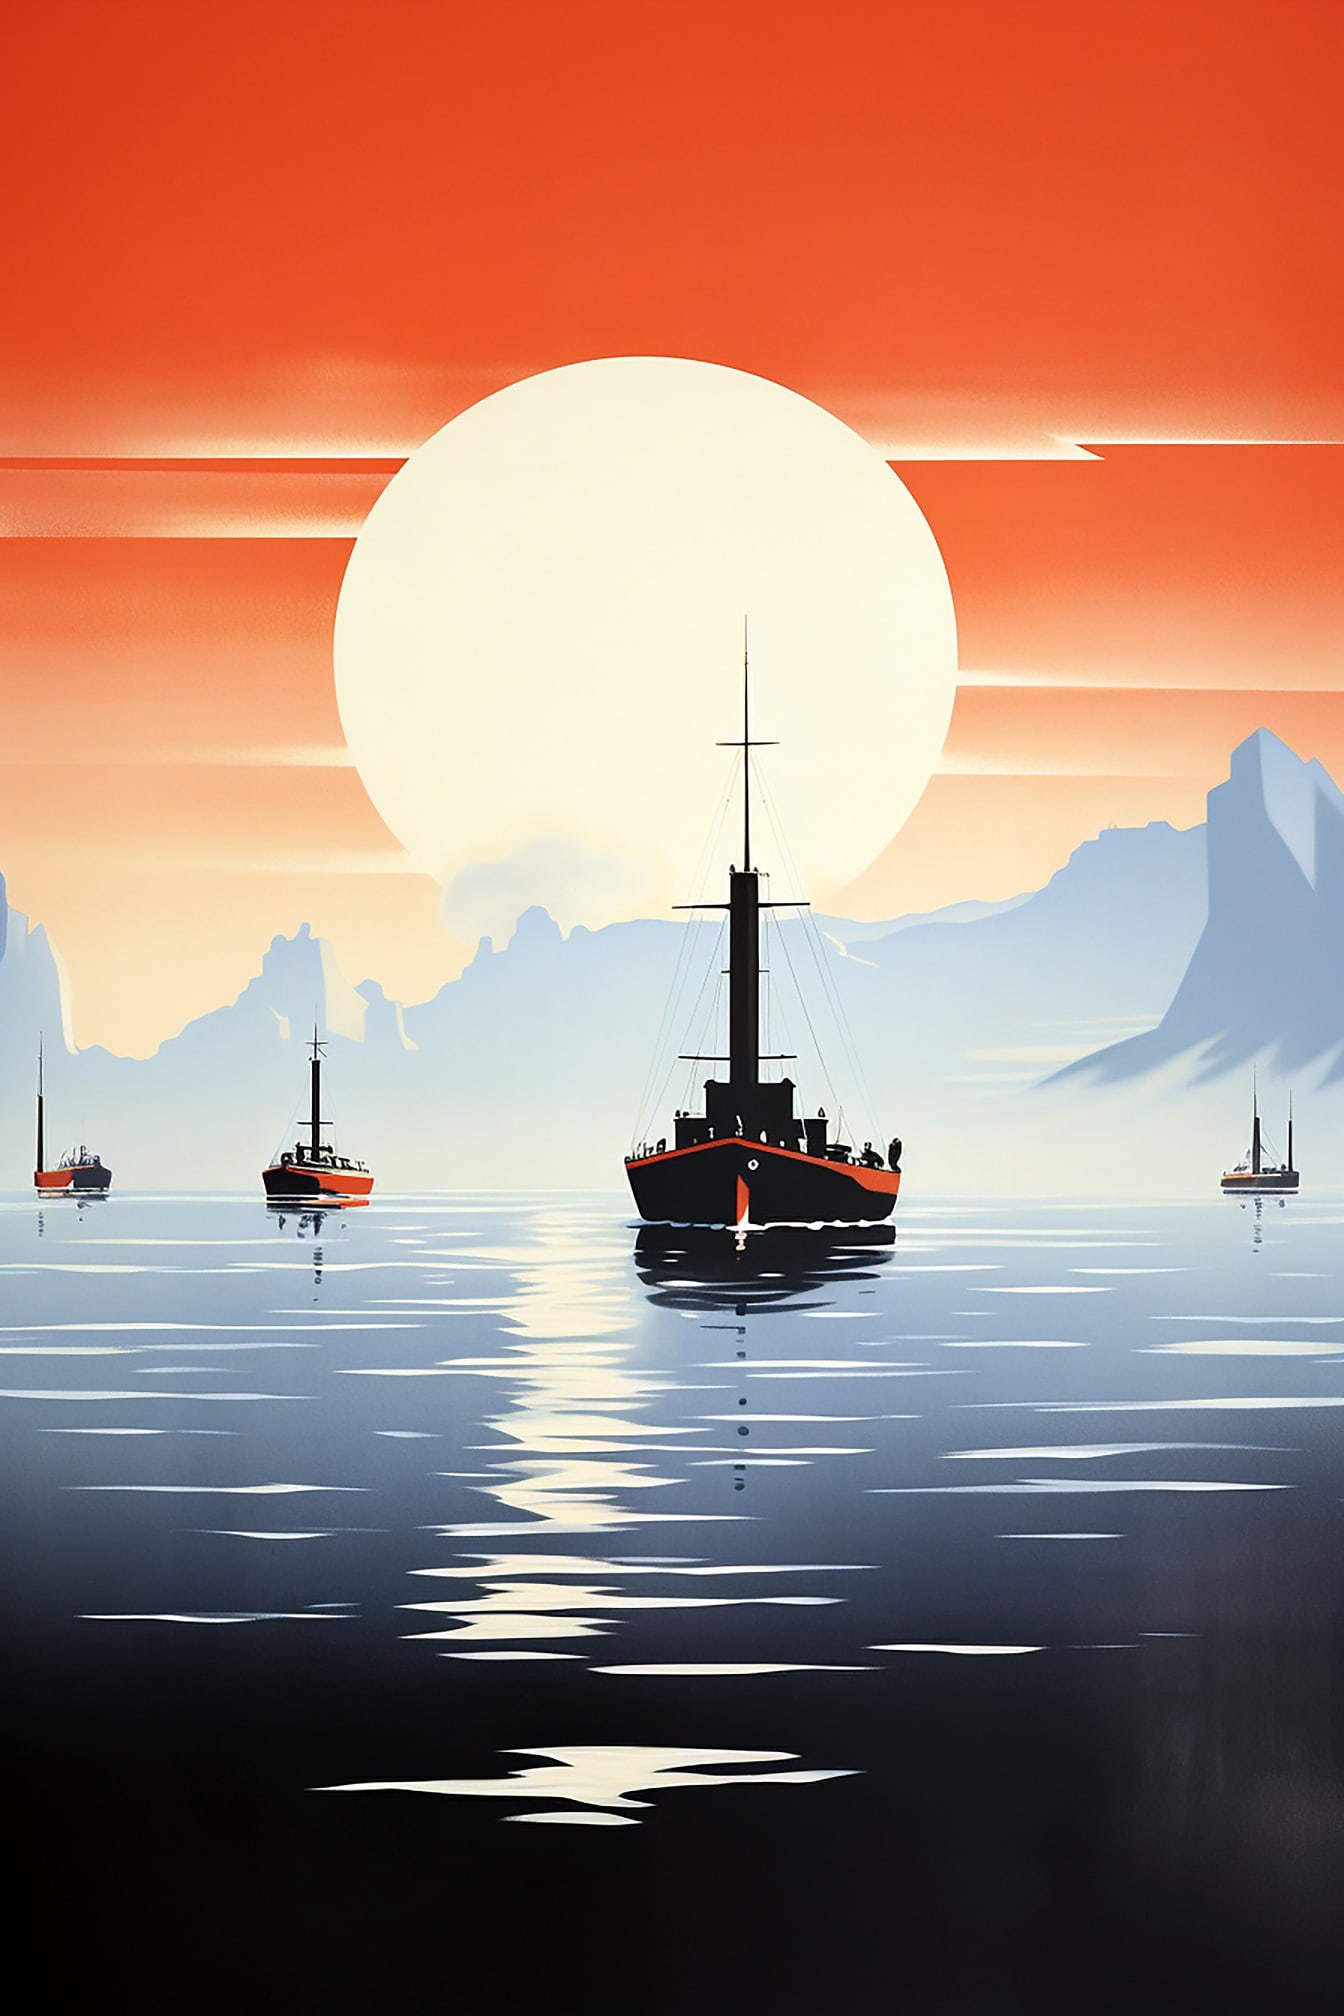 帆船的剪影与深红色的天空极简主义图形风格